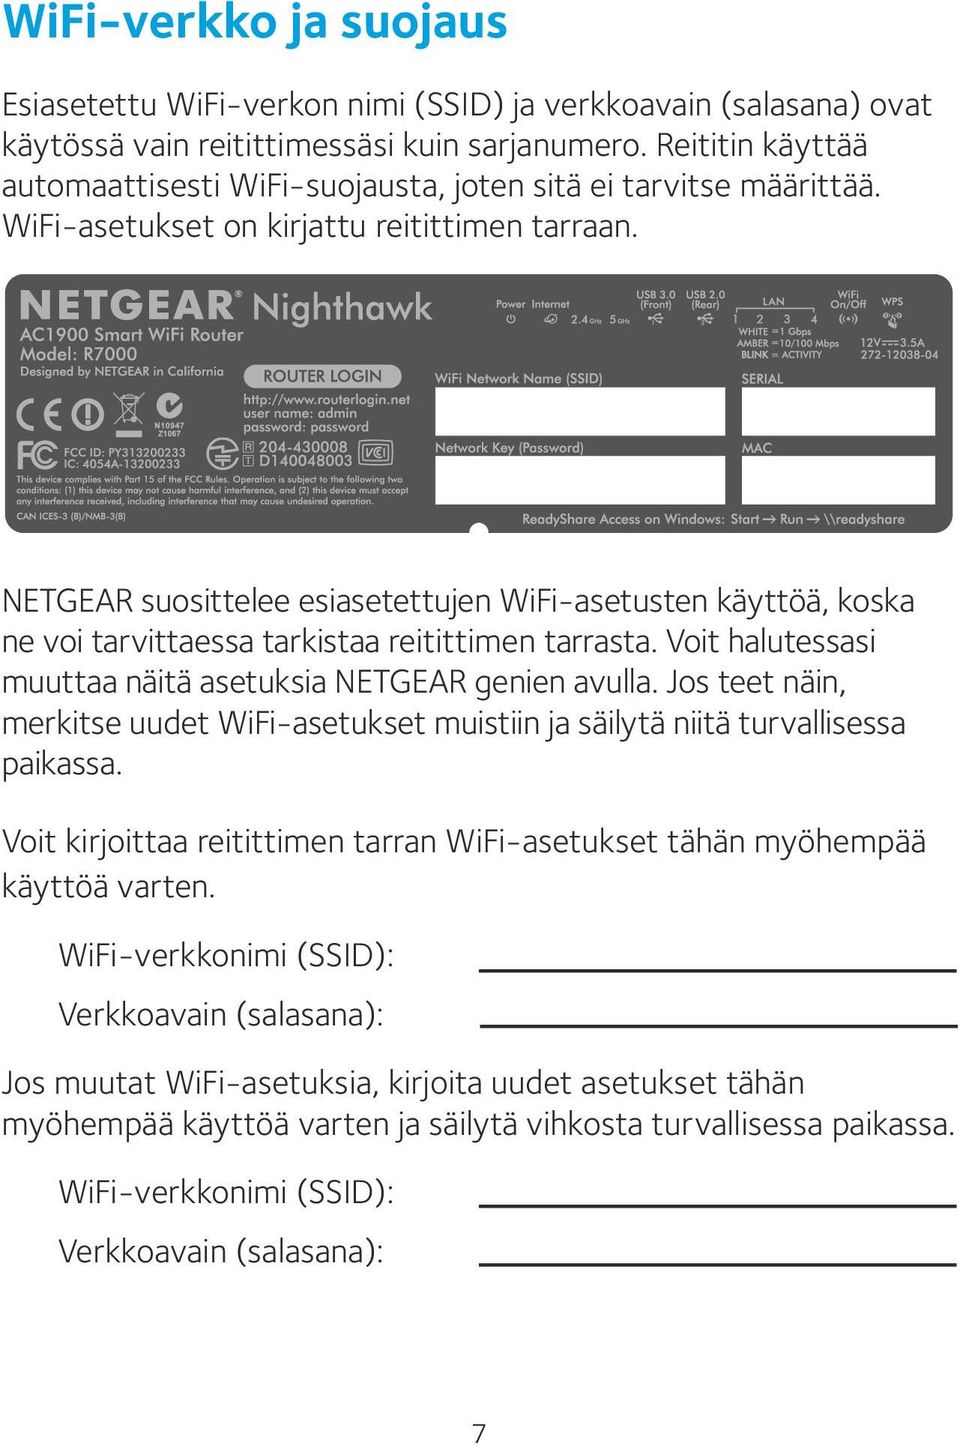 NETGEAR suosittelee esiasetettujen WiFi-asetusten käyttöä, koska ne voi tarvittaessa tarkistaa reitittimen tarrasta. Voit halutessasi muuttaa näitä asetuksia NETGEAR genien avulla.